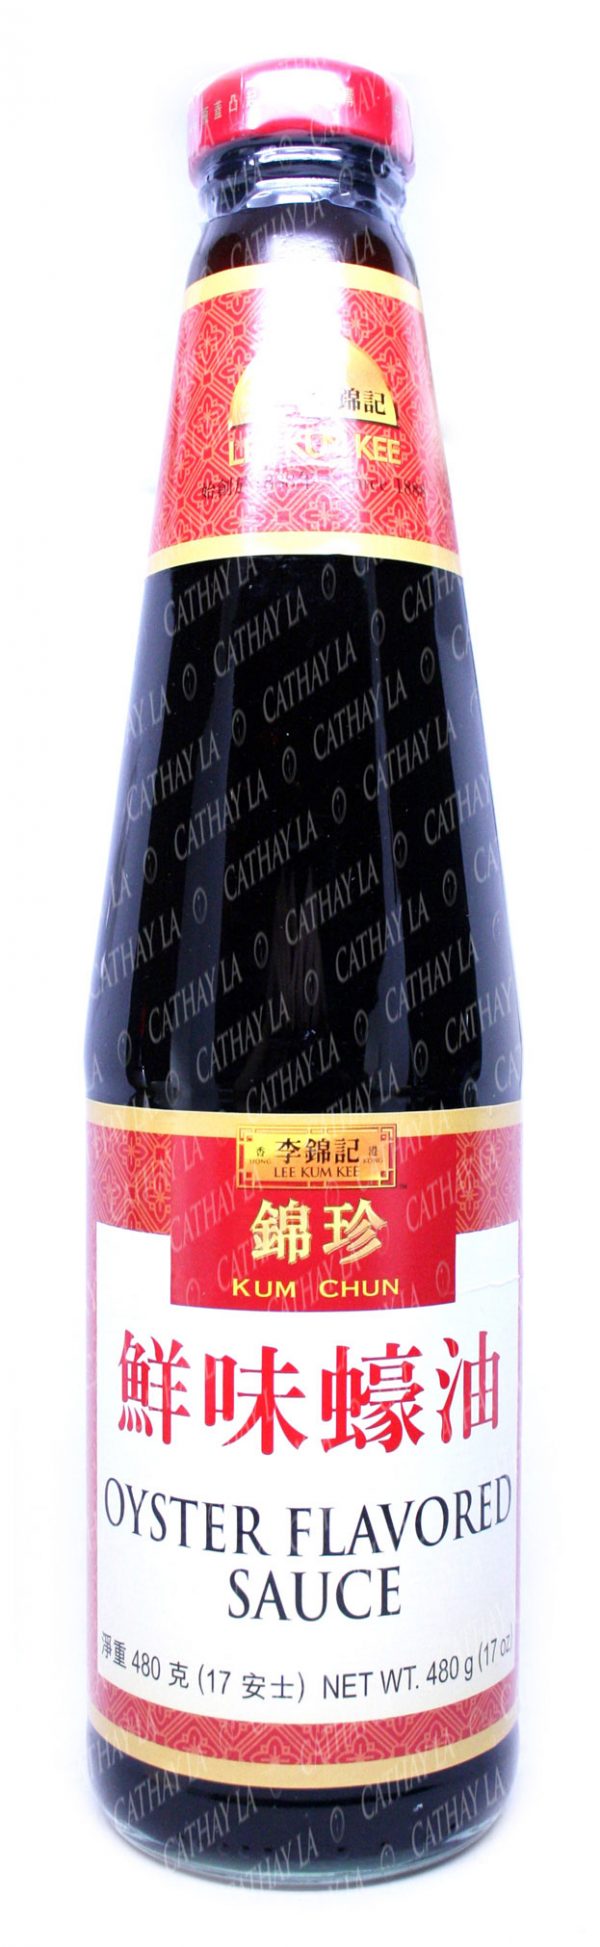 KUM CHUN  Oyster Sauce 24-Bottle